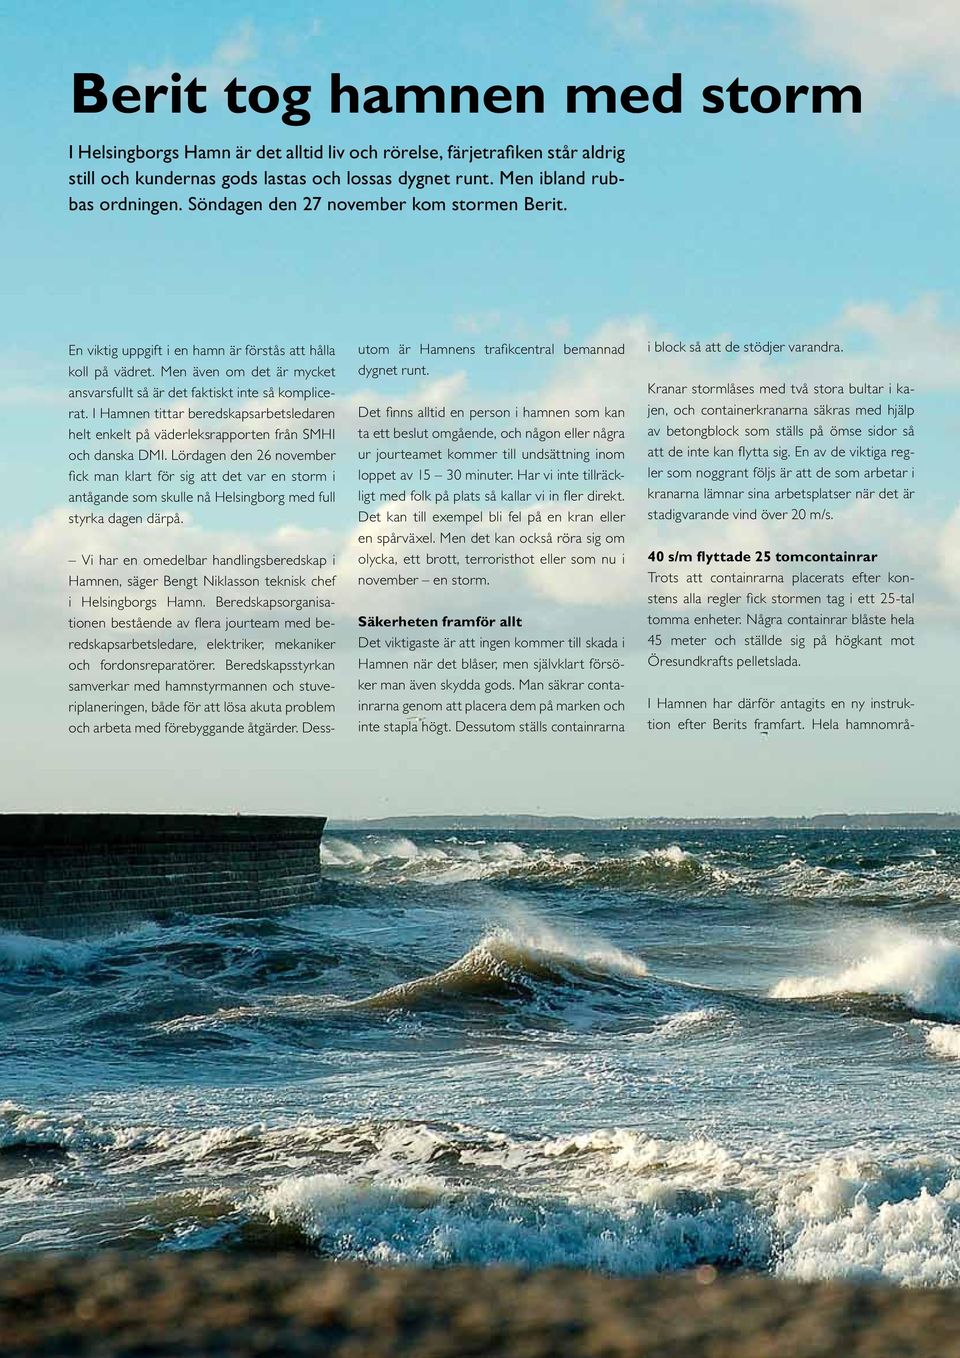 I Hamnen tittar beredskapsarbetsledaren helt enkelt på väderleksrapporten från SMHI och danska DMI.